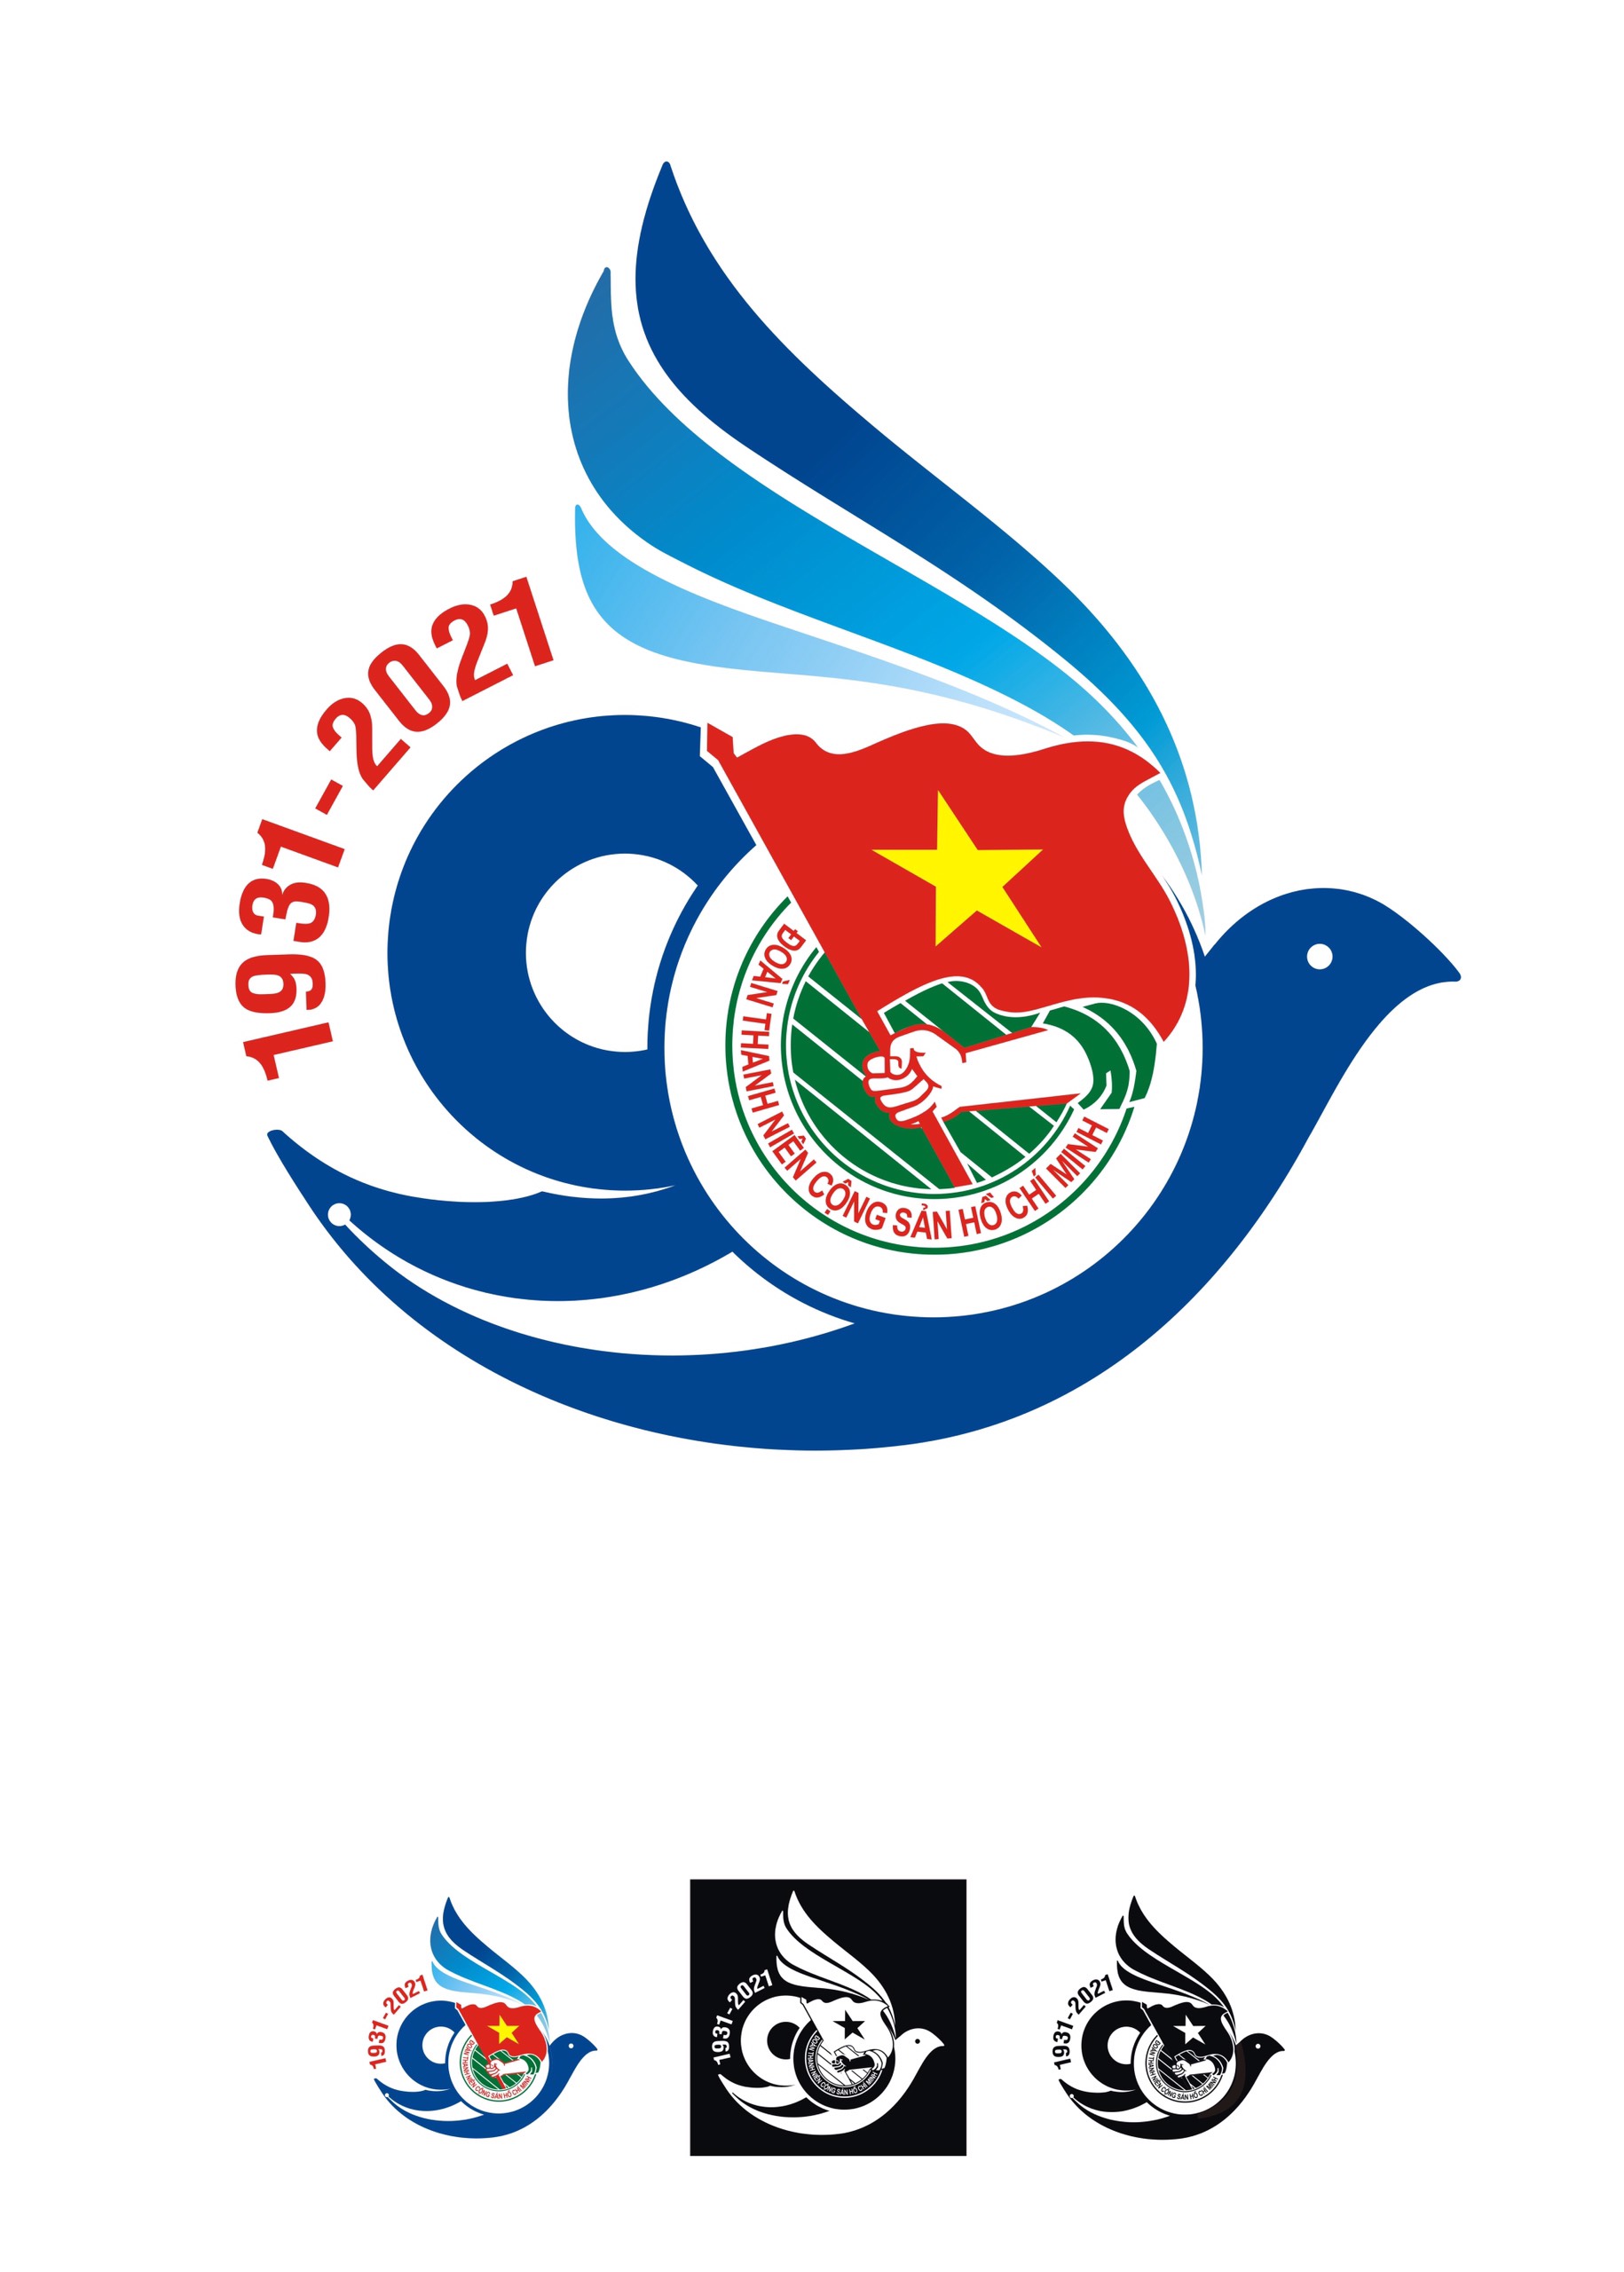 Thưởng thức hình ảnh về những chiến thắng lịch sử của các thế hệ trẻ Việt Nam được thể hiện qua các tổ chức tuyên truyền và thiết kế biểu tượng đầy cá tính trong cuộc thi thiết kế biểu tượng kỷ niệm 90 năm thành lập Đoàn TNCS Hồ Chí Minh.